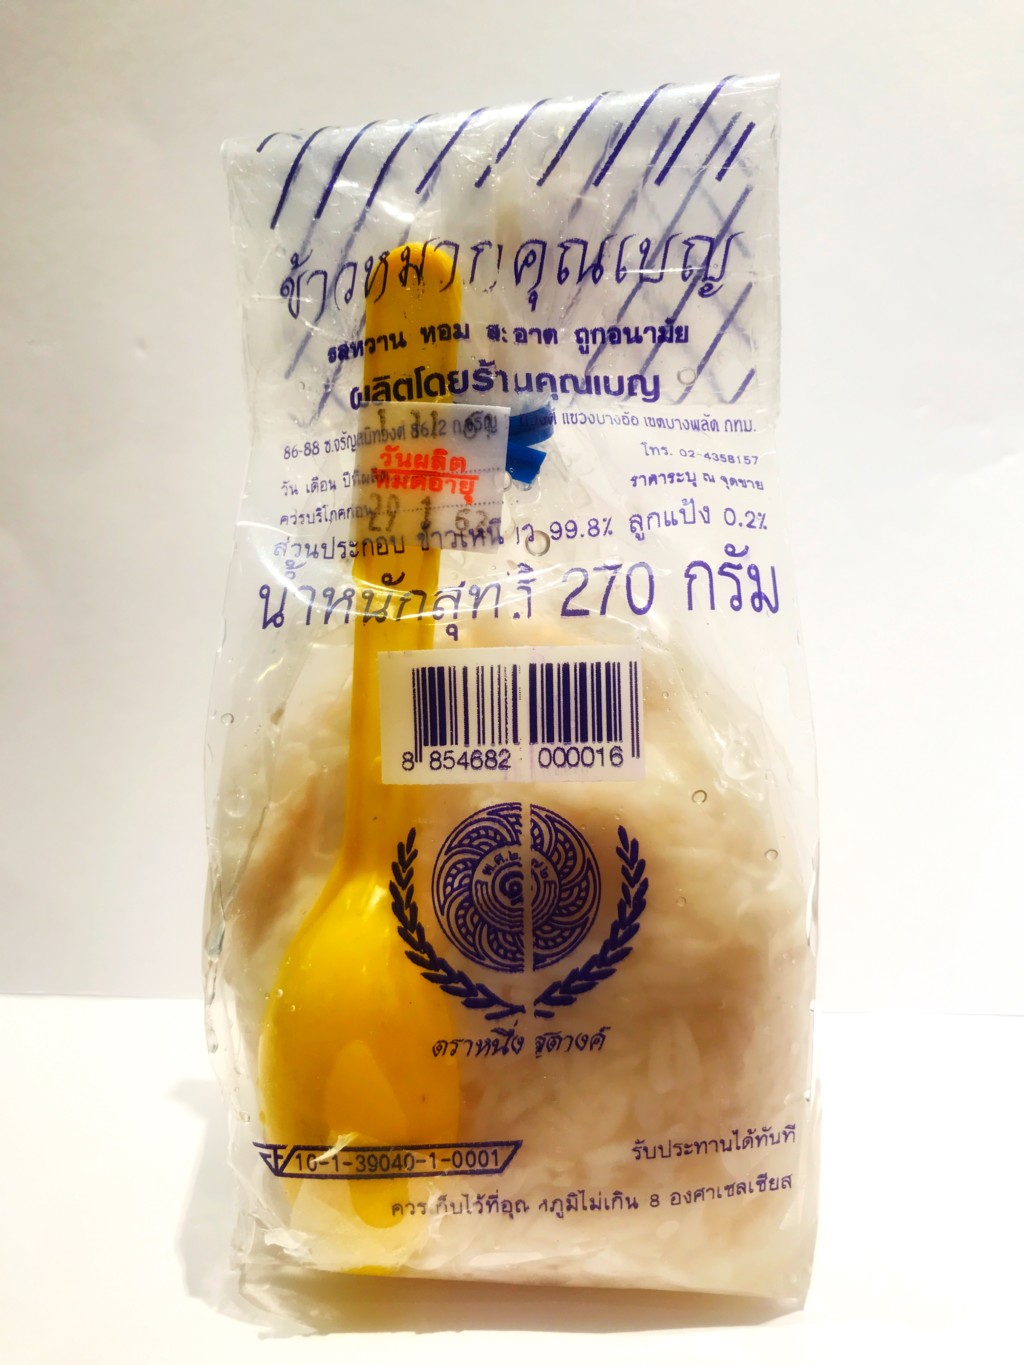 タイ王国の伝統的な甘酒『カオマーク(khao maak)』